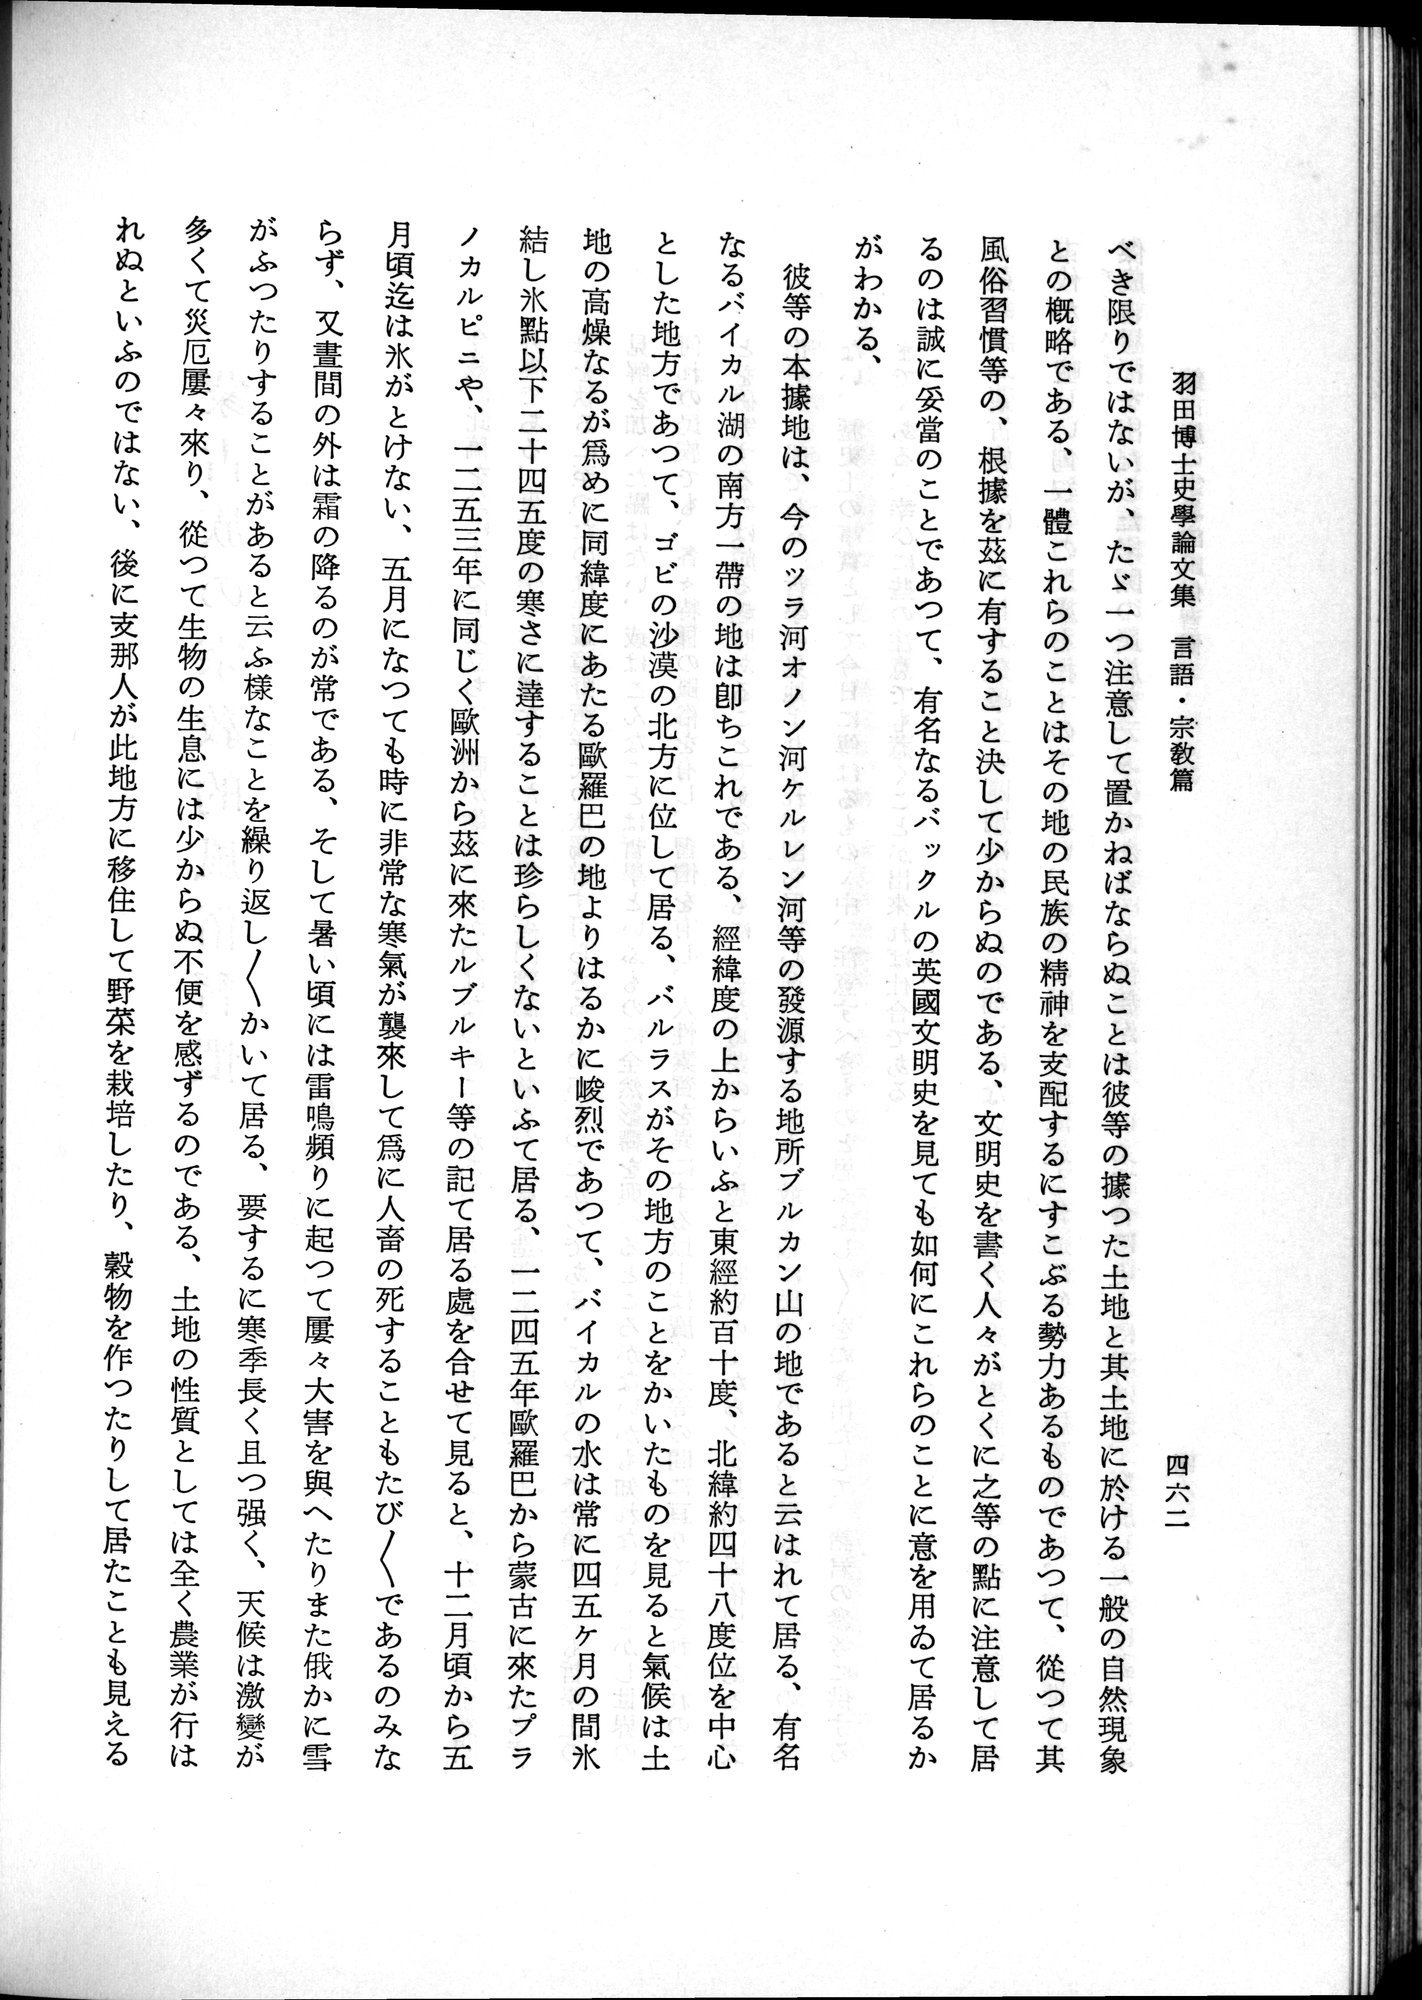 羽田博士史学論文集 : vol.2 / Page 524 (Grayscale High Resolution Image)